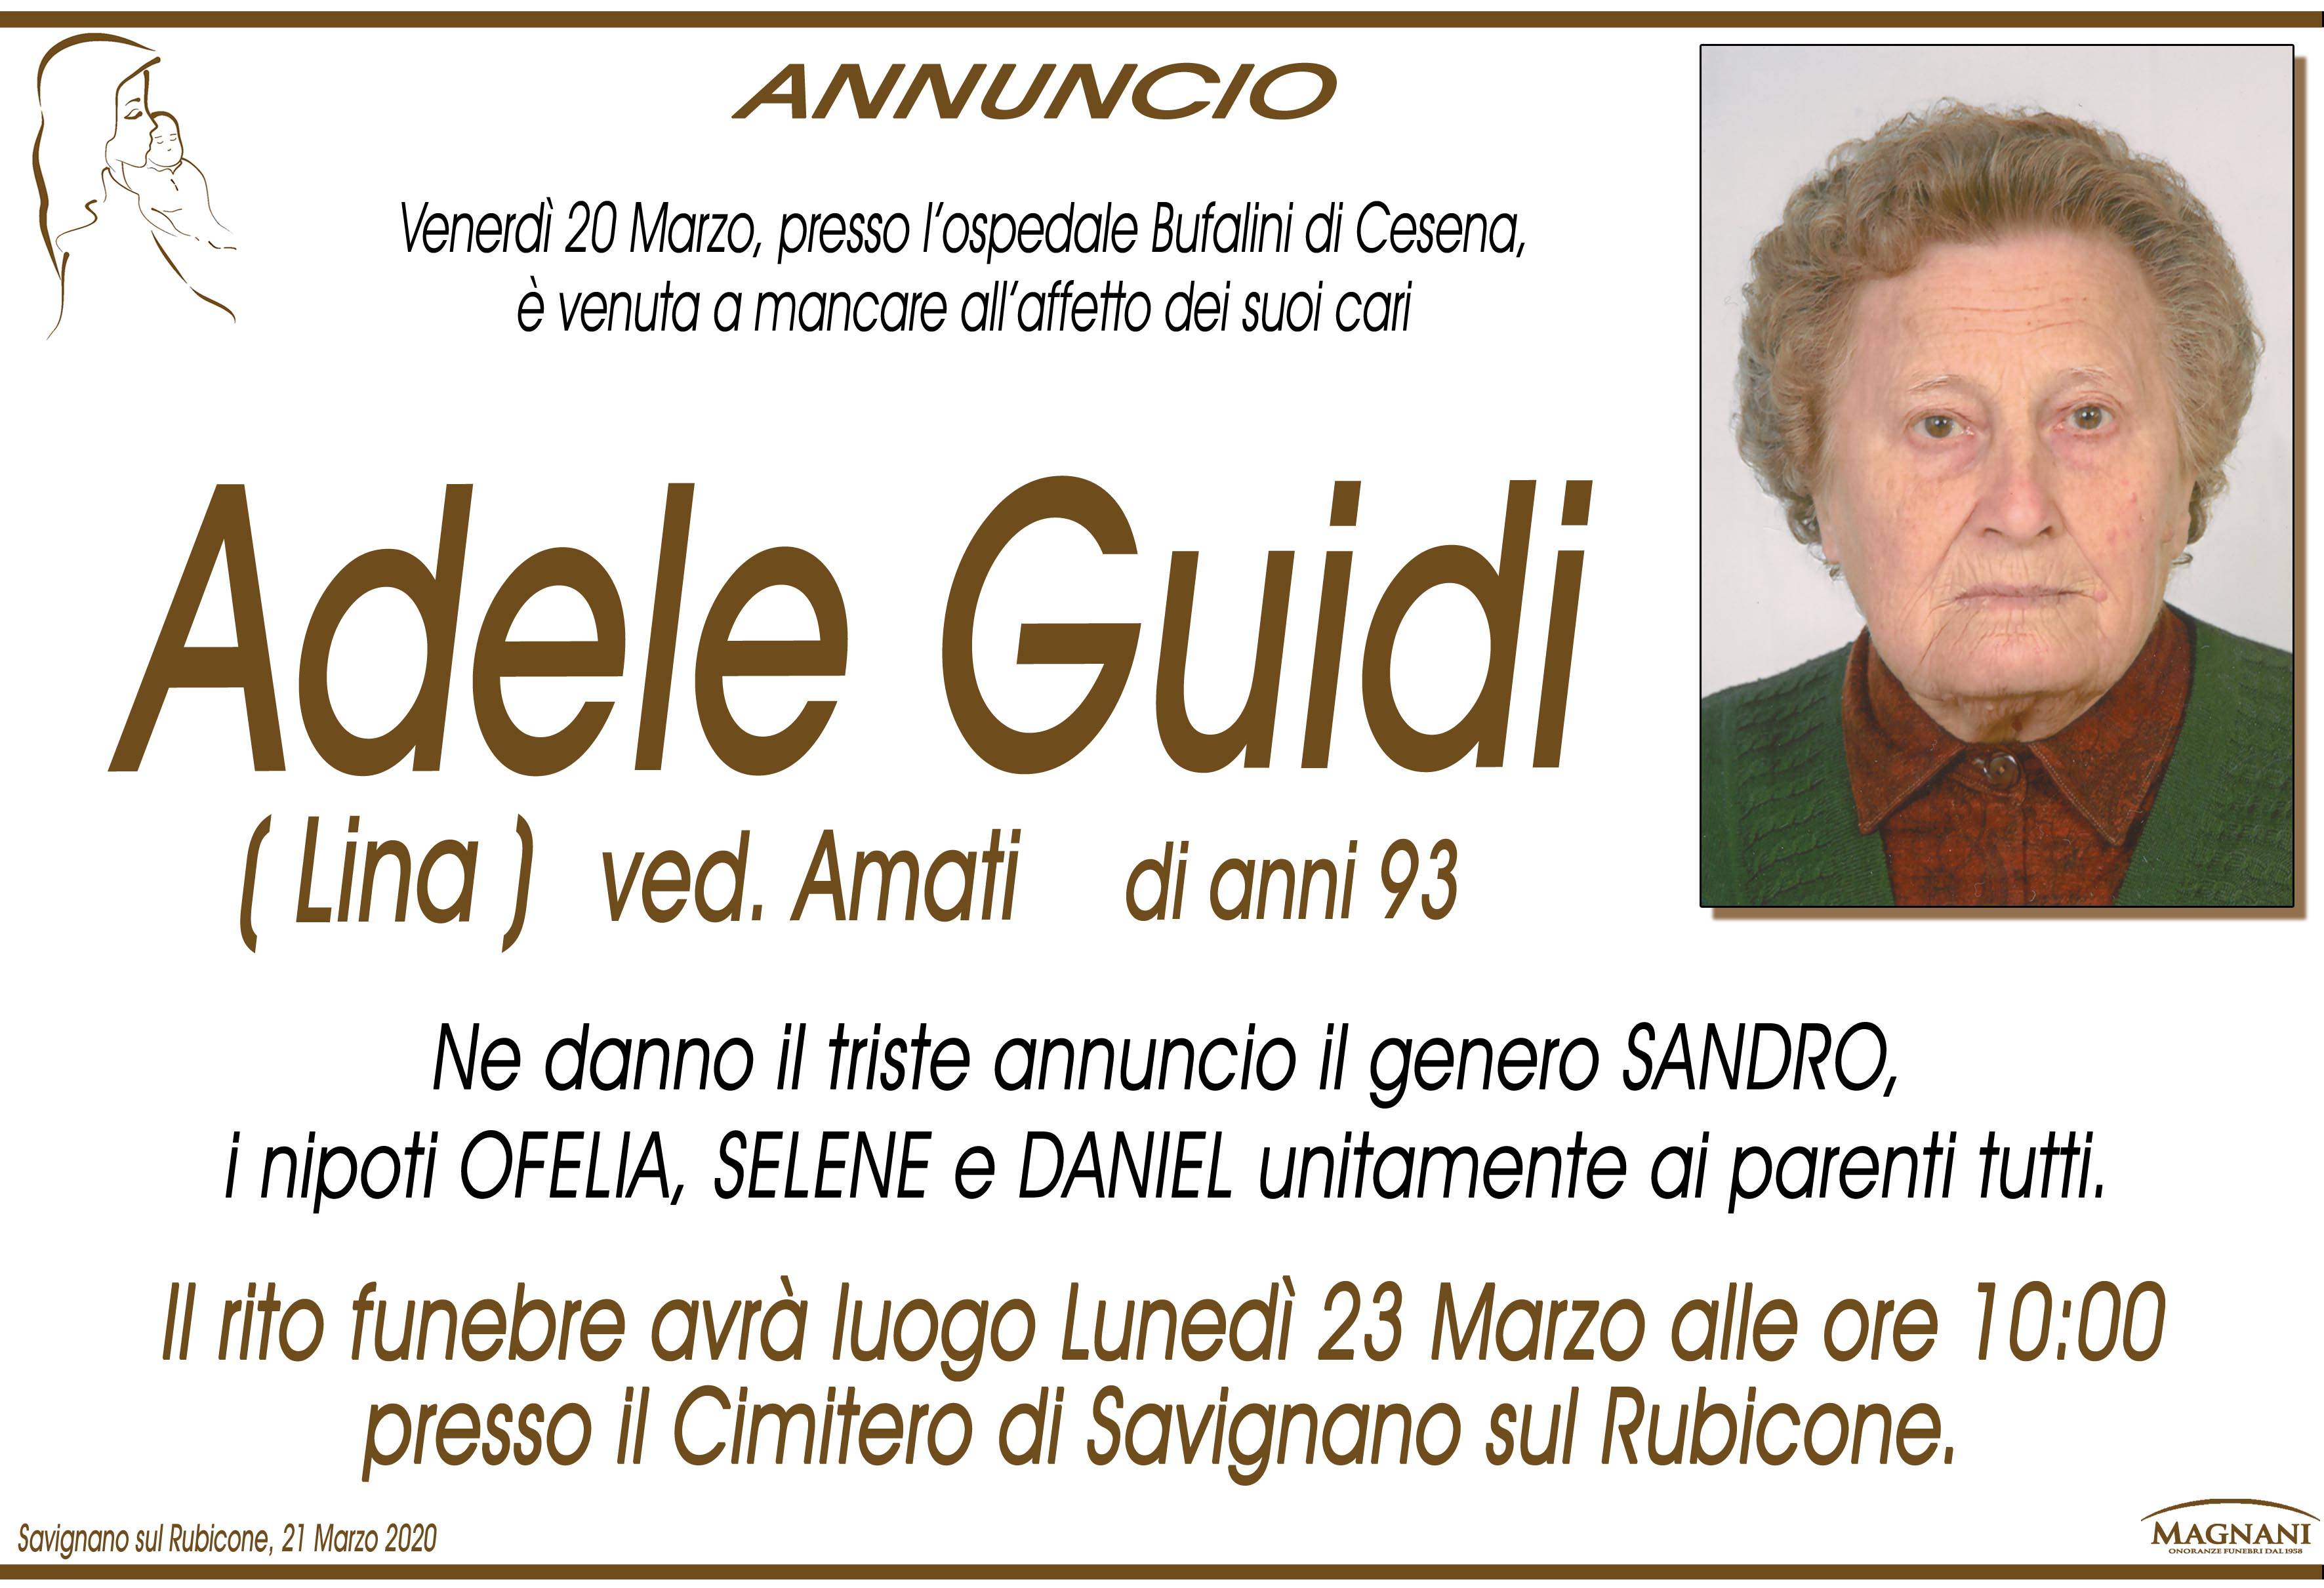 Adele Guidi